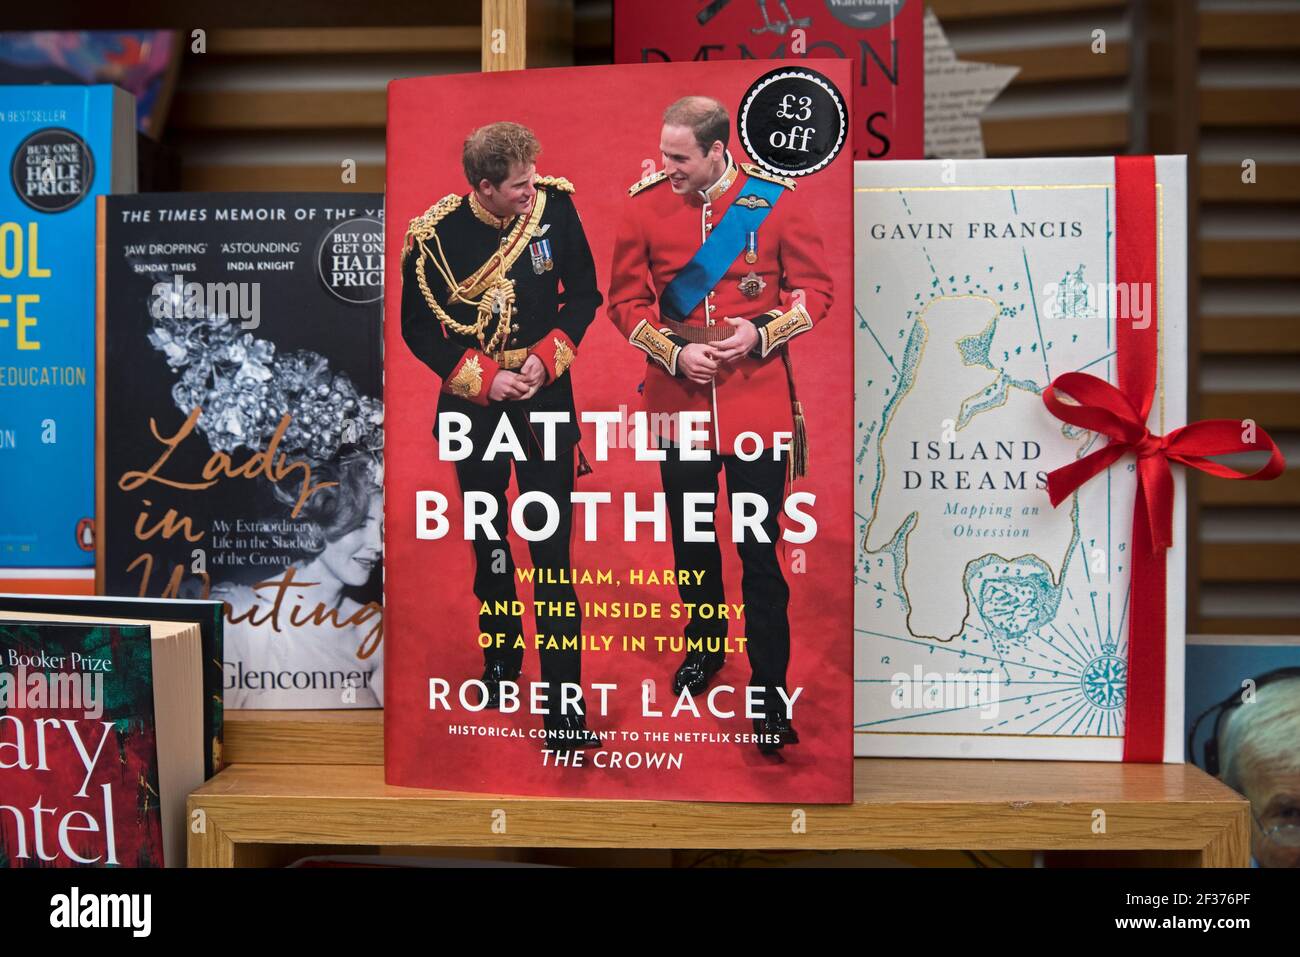 Copia di 'Battle of Brothers' di Robert Lacey in mostra nella vetrina della libreria Waterstones, Princes Street, Edimburgo, Scozia, Regno Unito. Foto Stock